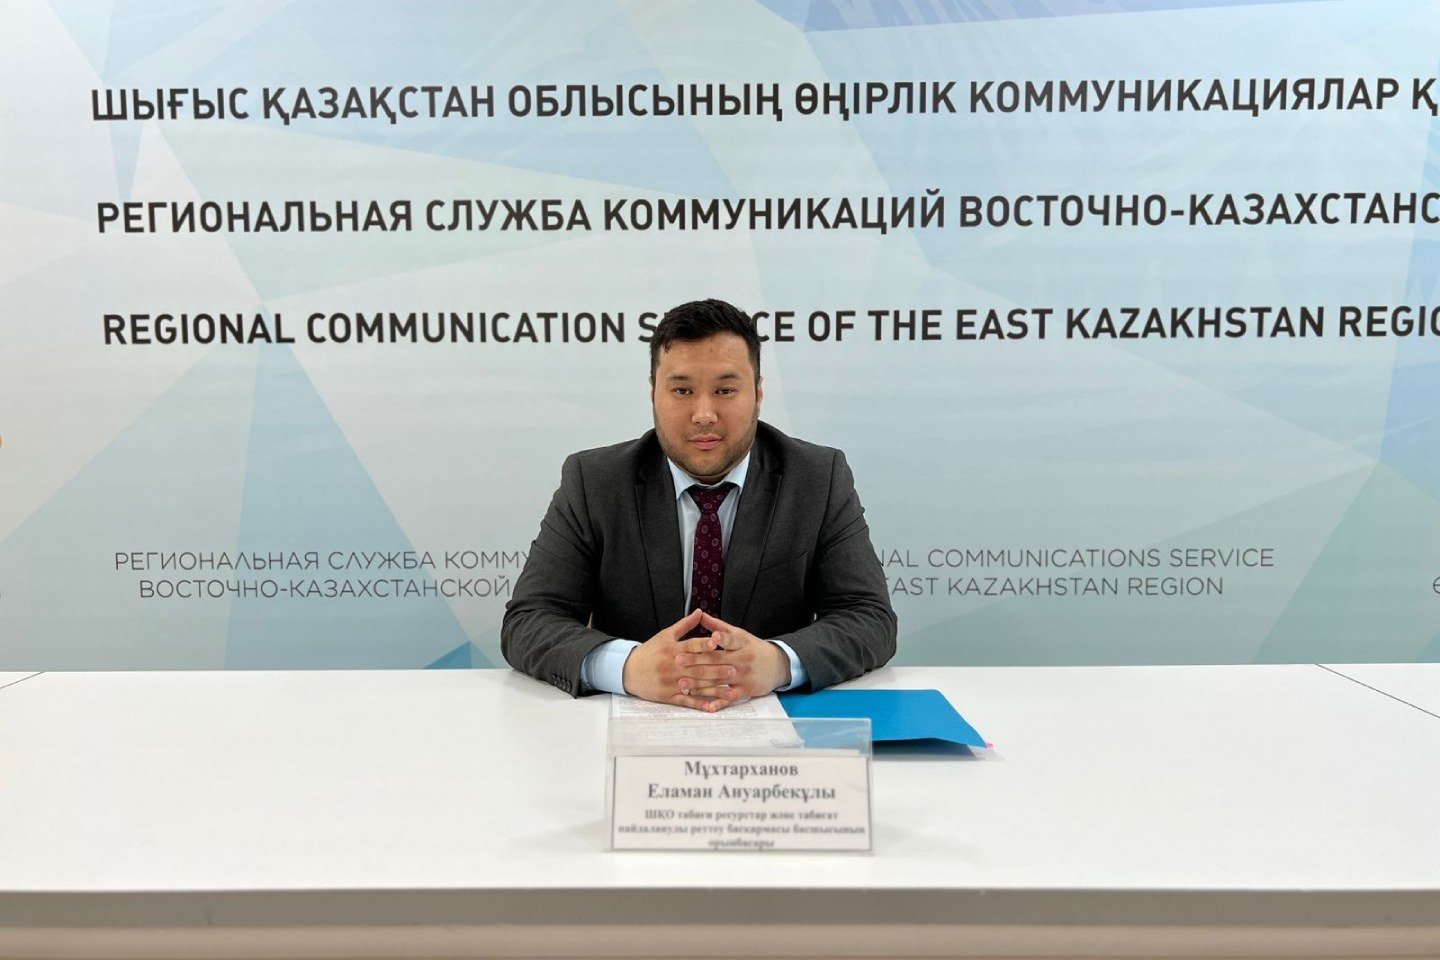 Новости Казахстана / Общество в Казахстане / Более 400 тысяч деревьев высадят до 2025 года в ВКО